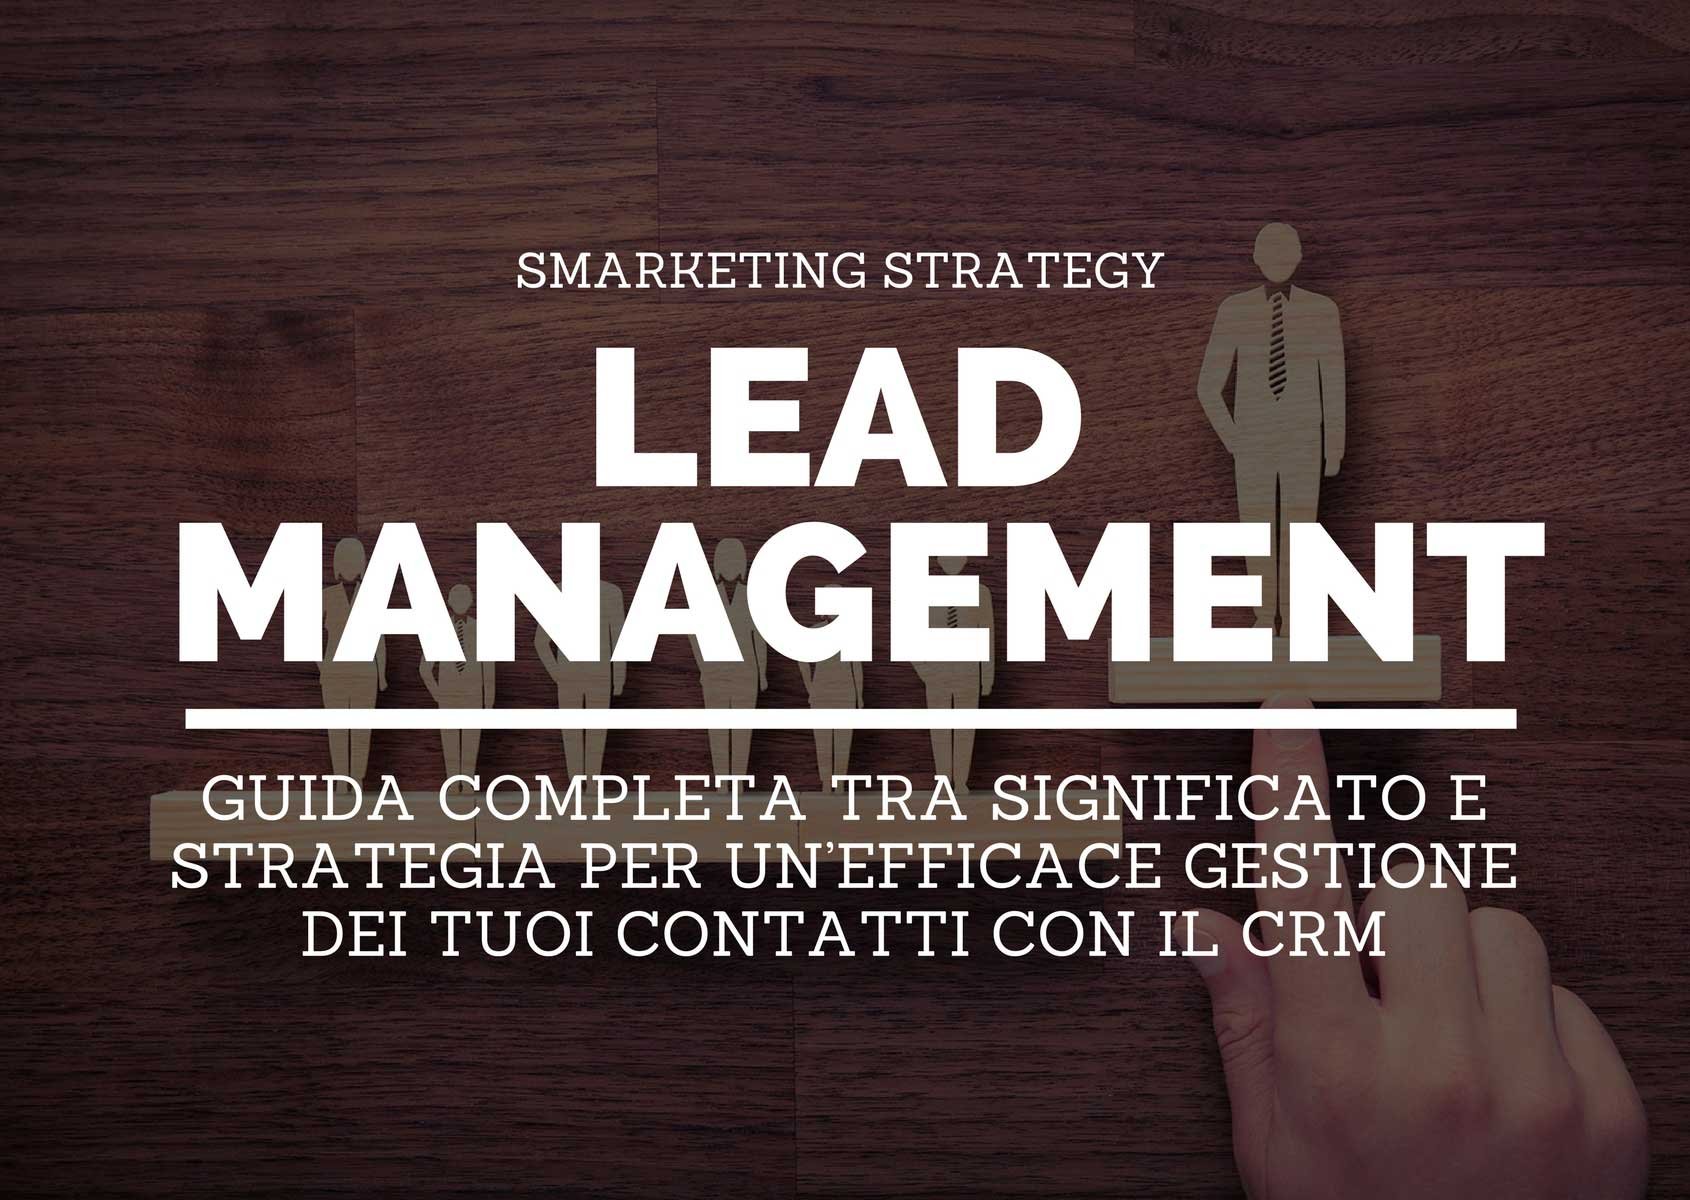 Lead management: guida completa tra significato e strategia per un’efficace gestione dei tuoi contatti con il CRM